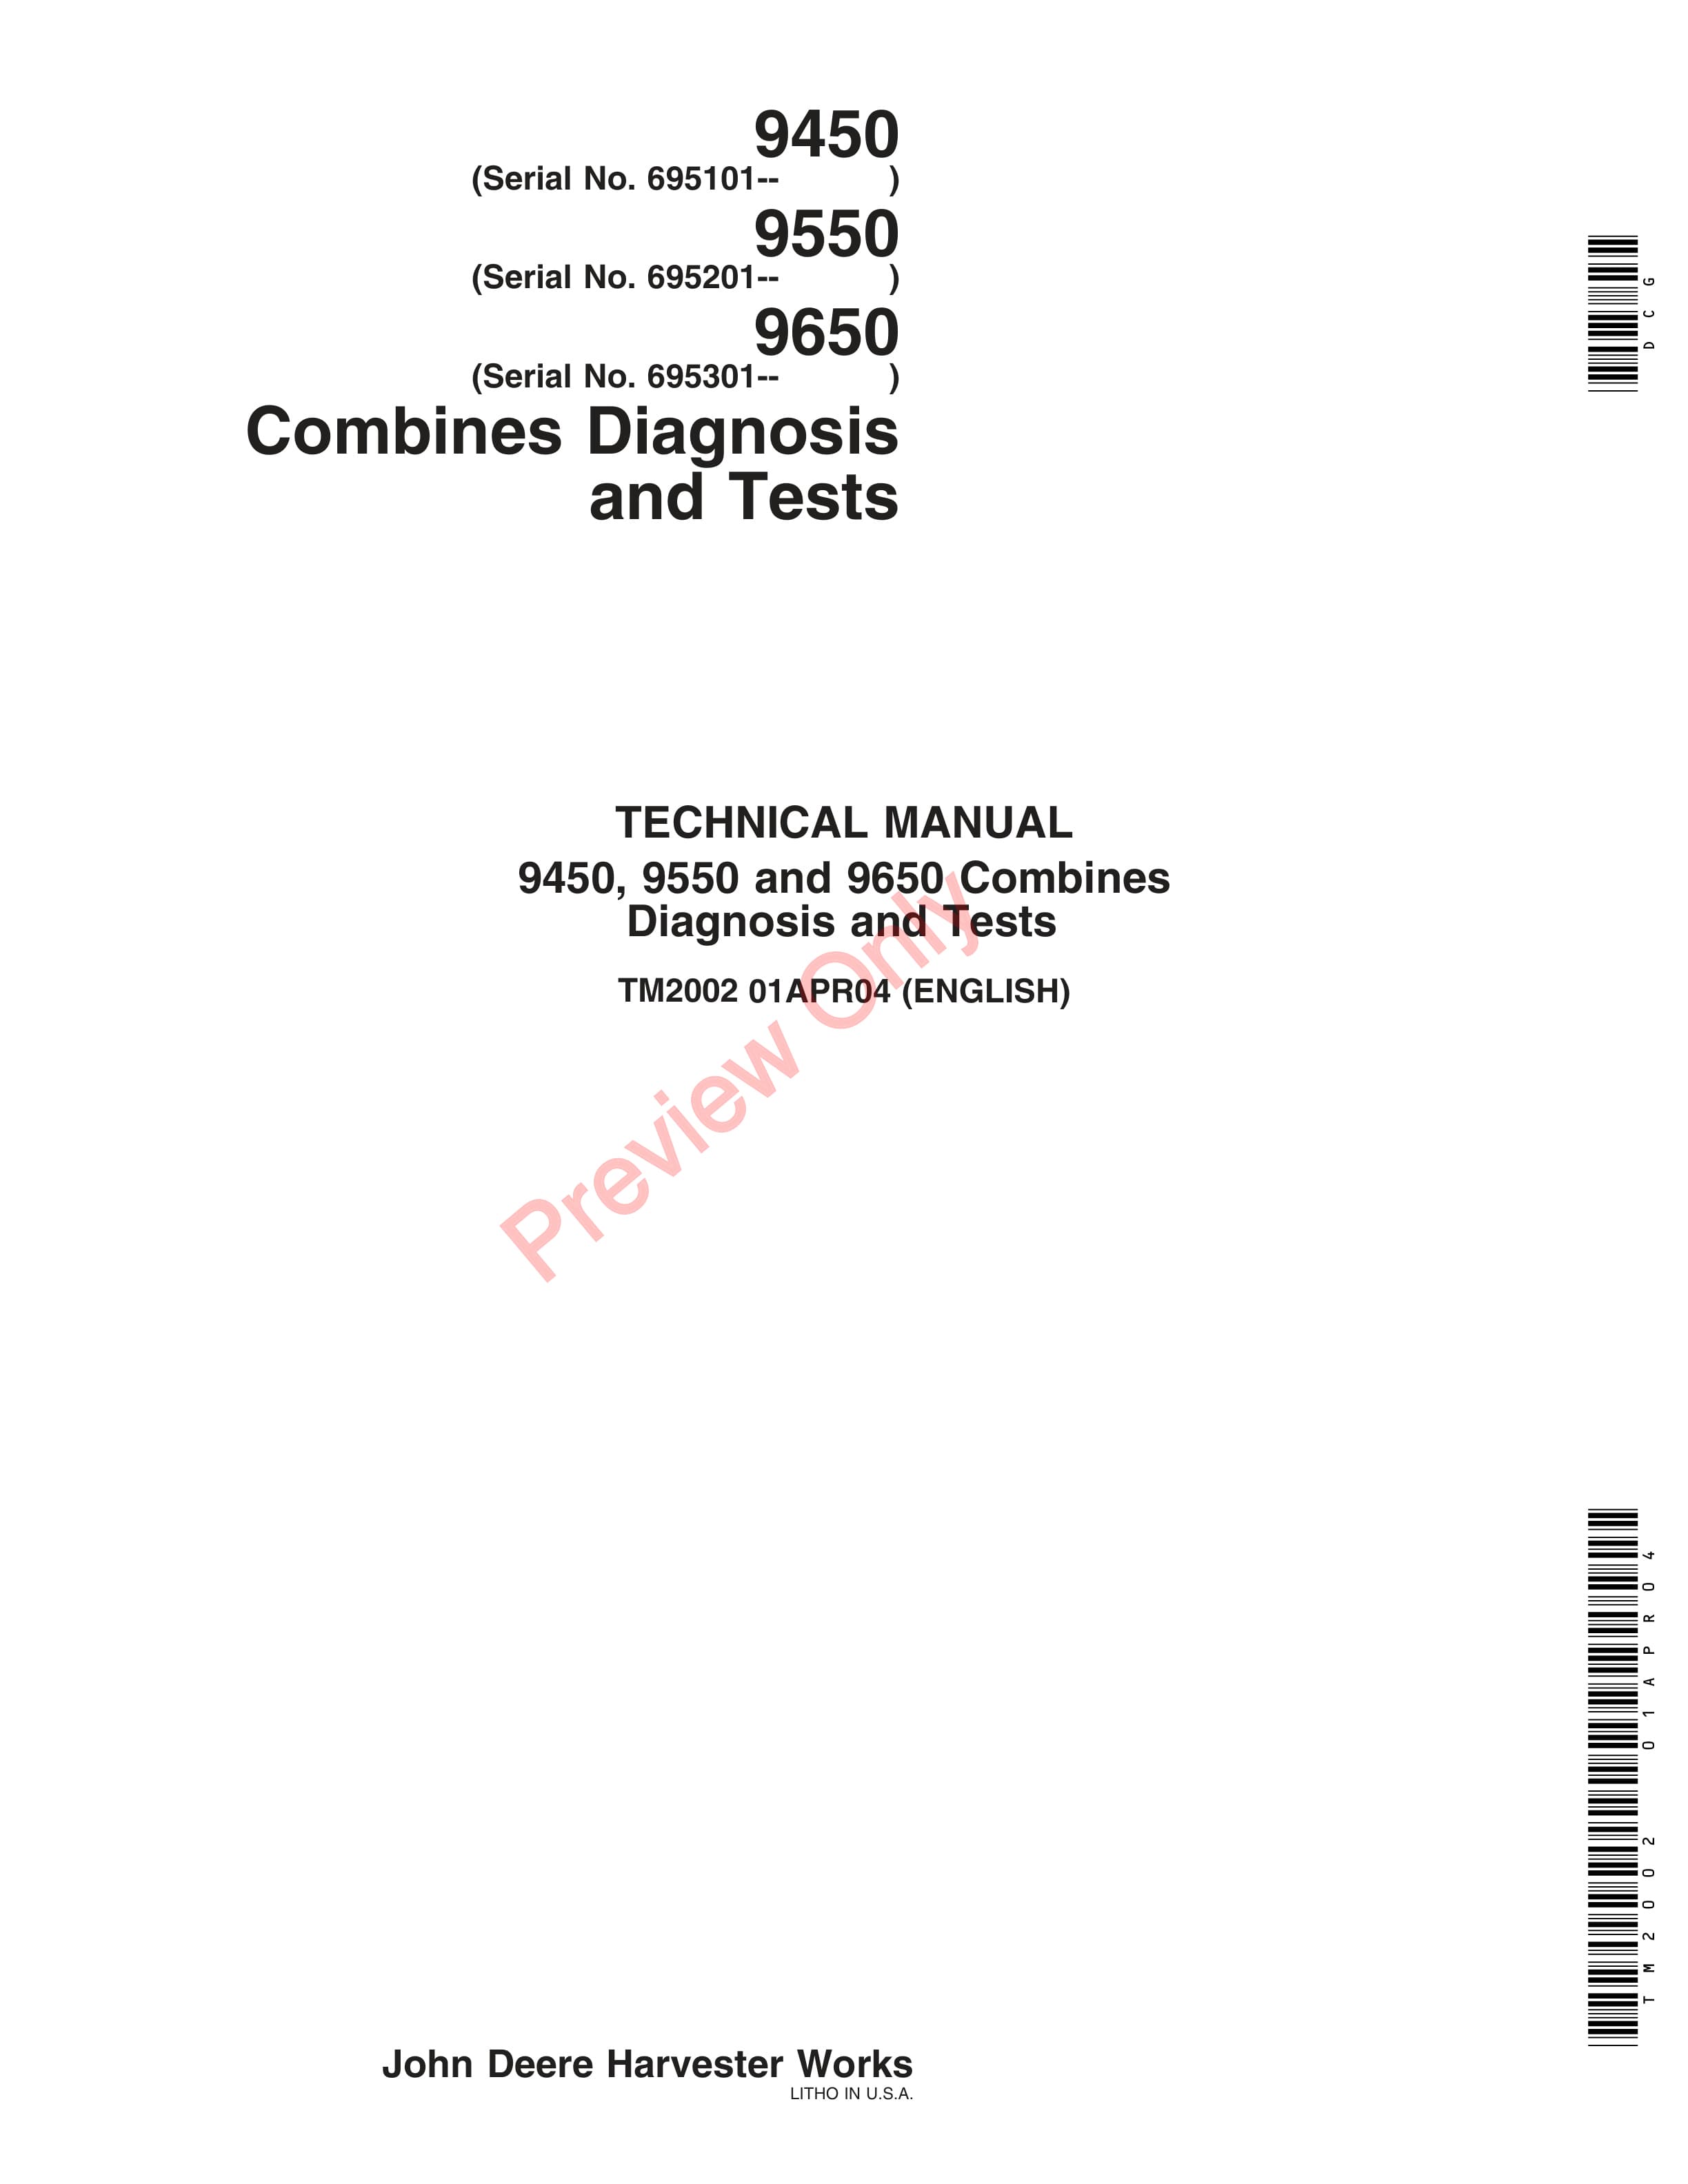 John Deere 9450 Combines (695101-) 9550 Combines (695201 Technical Manual TM2002 01APR04-1